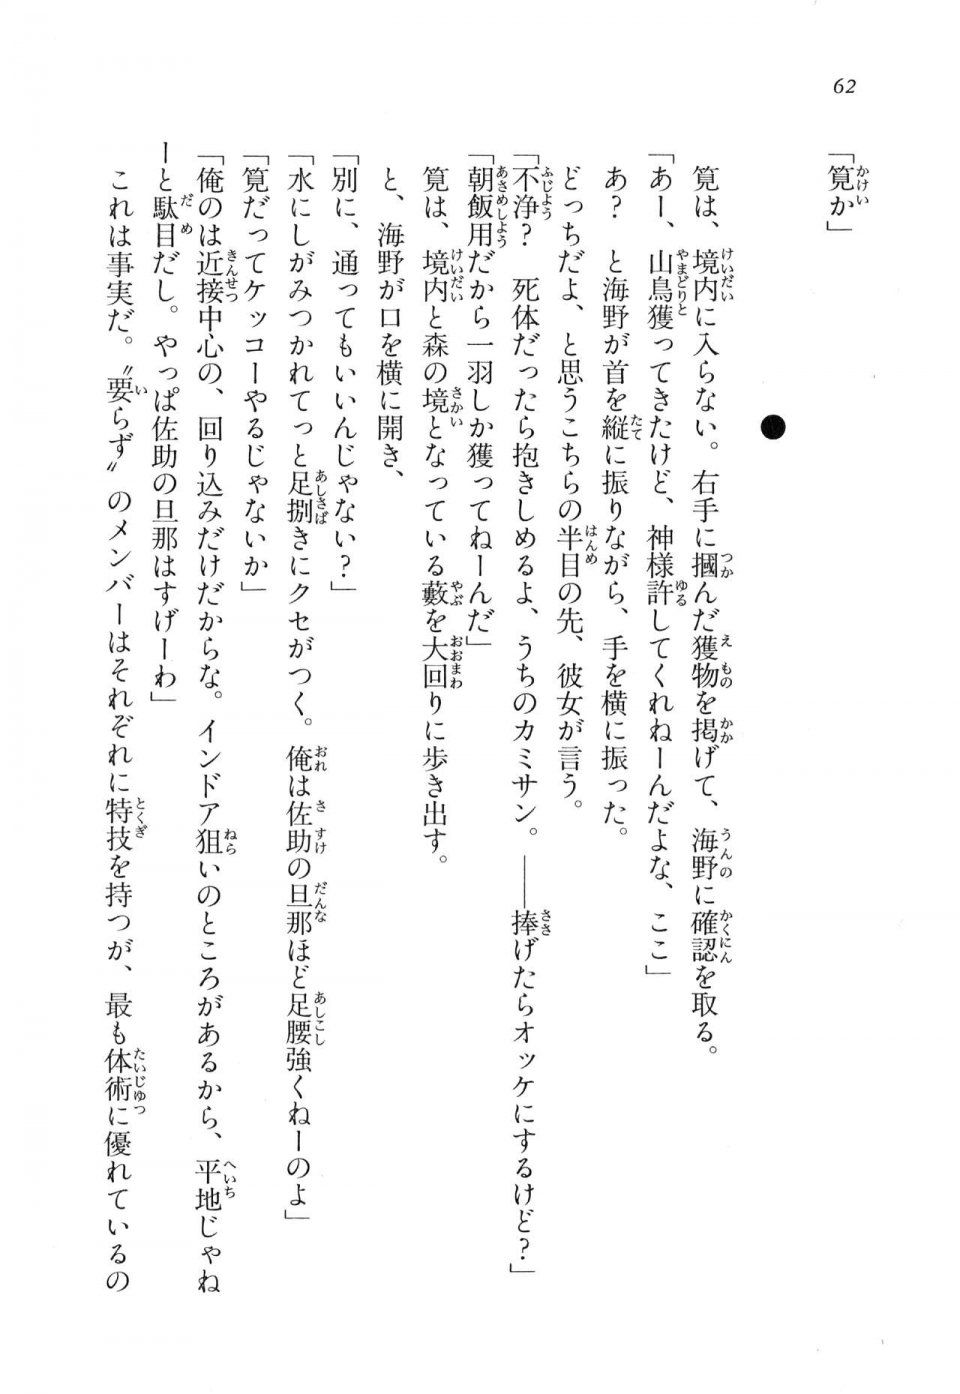 Kyoukai Senjou no Horizon LN Vol 11(5A) - Photo #62